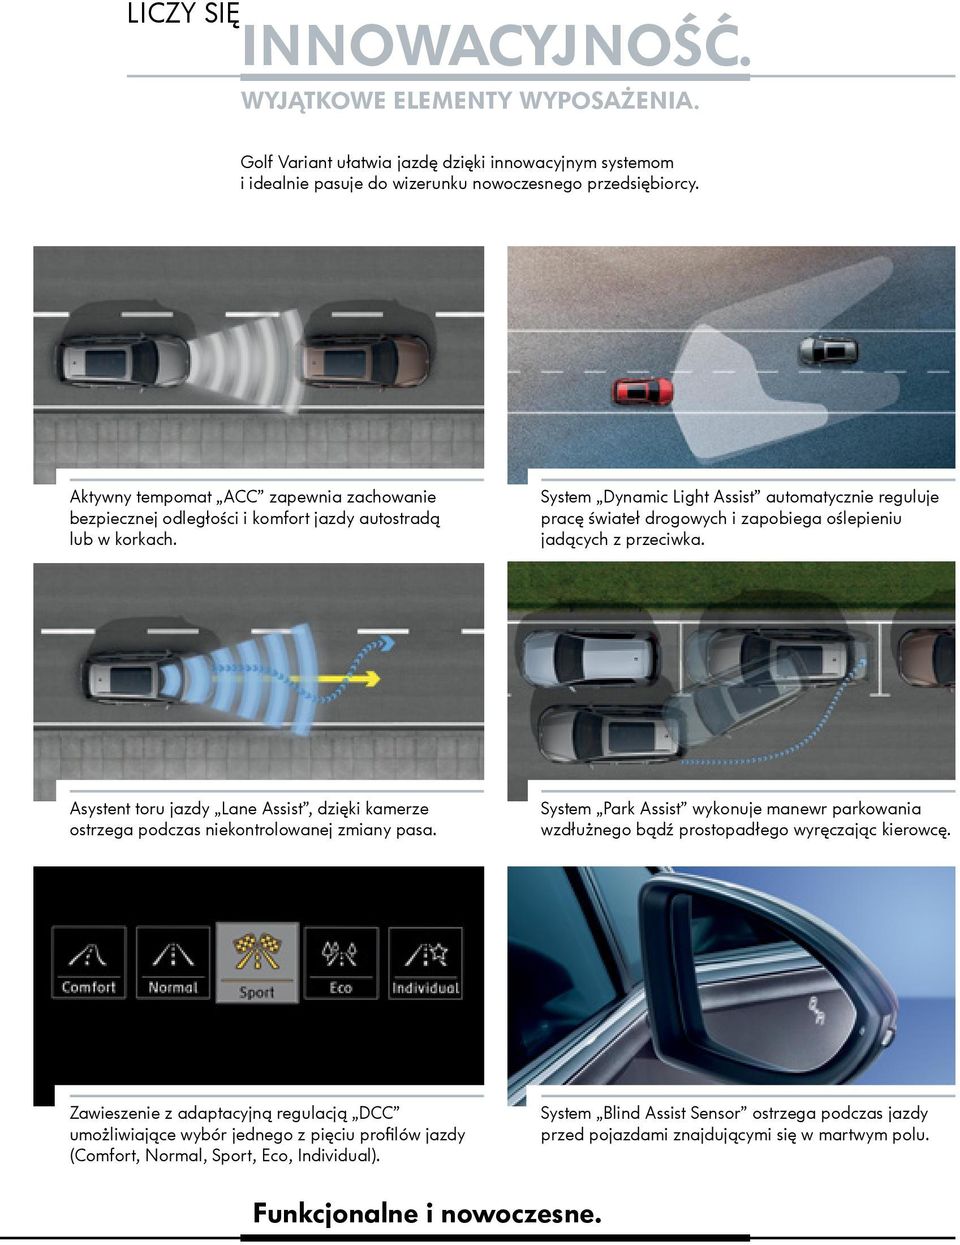 System Dynamic Light Assist automatycznie reguluje pracę świateł drogowych i zapobiega oślepieniu jadących z przeciwka.